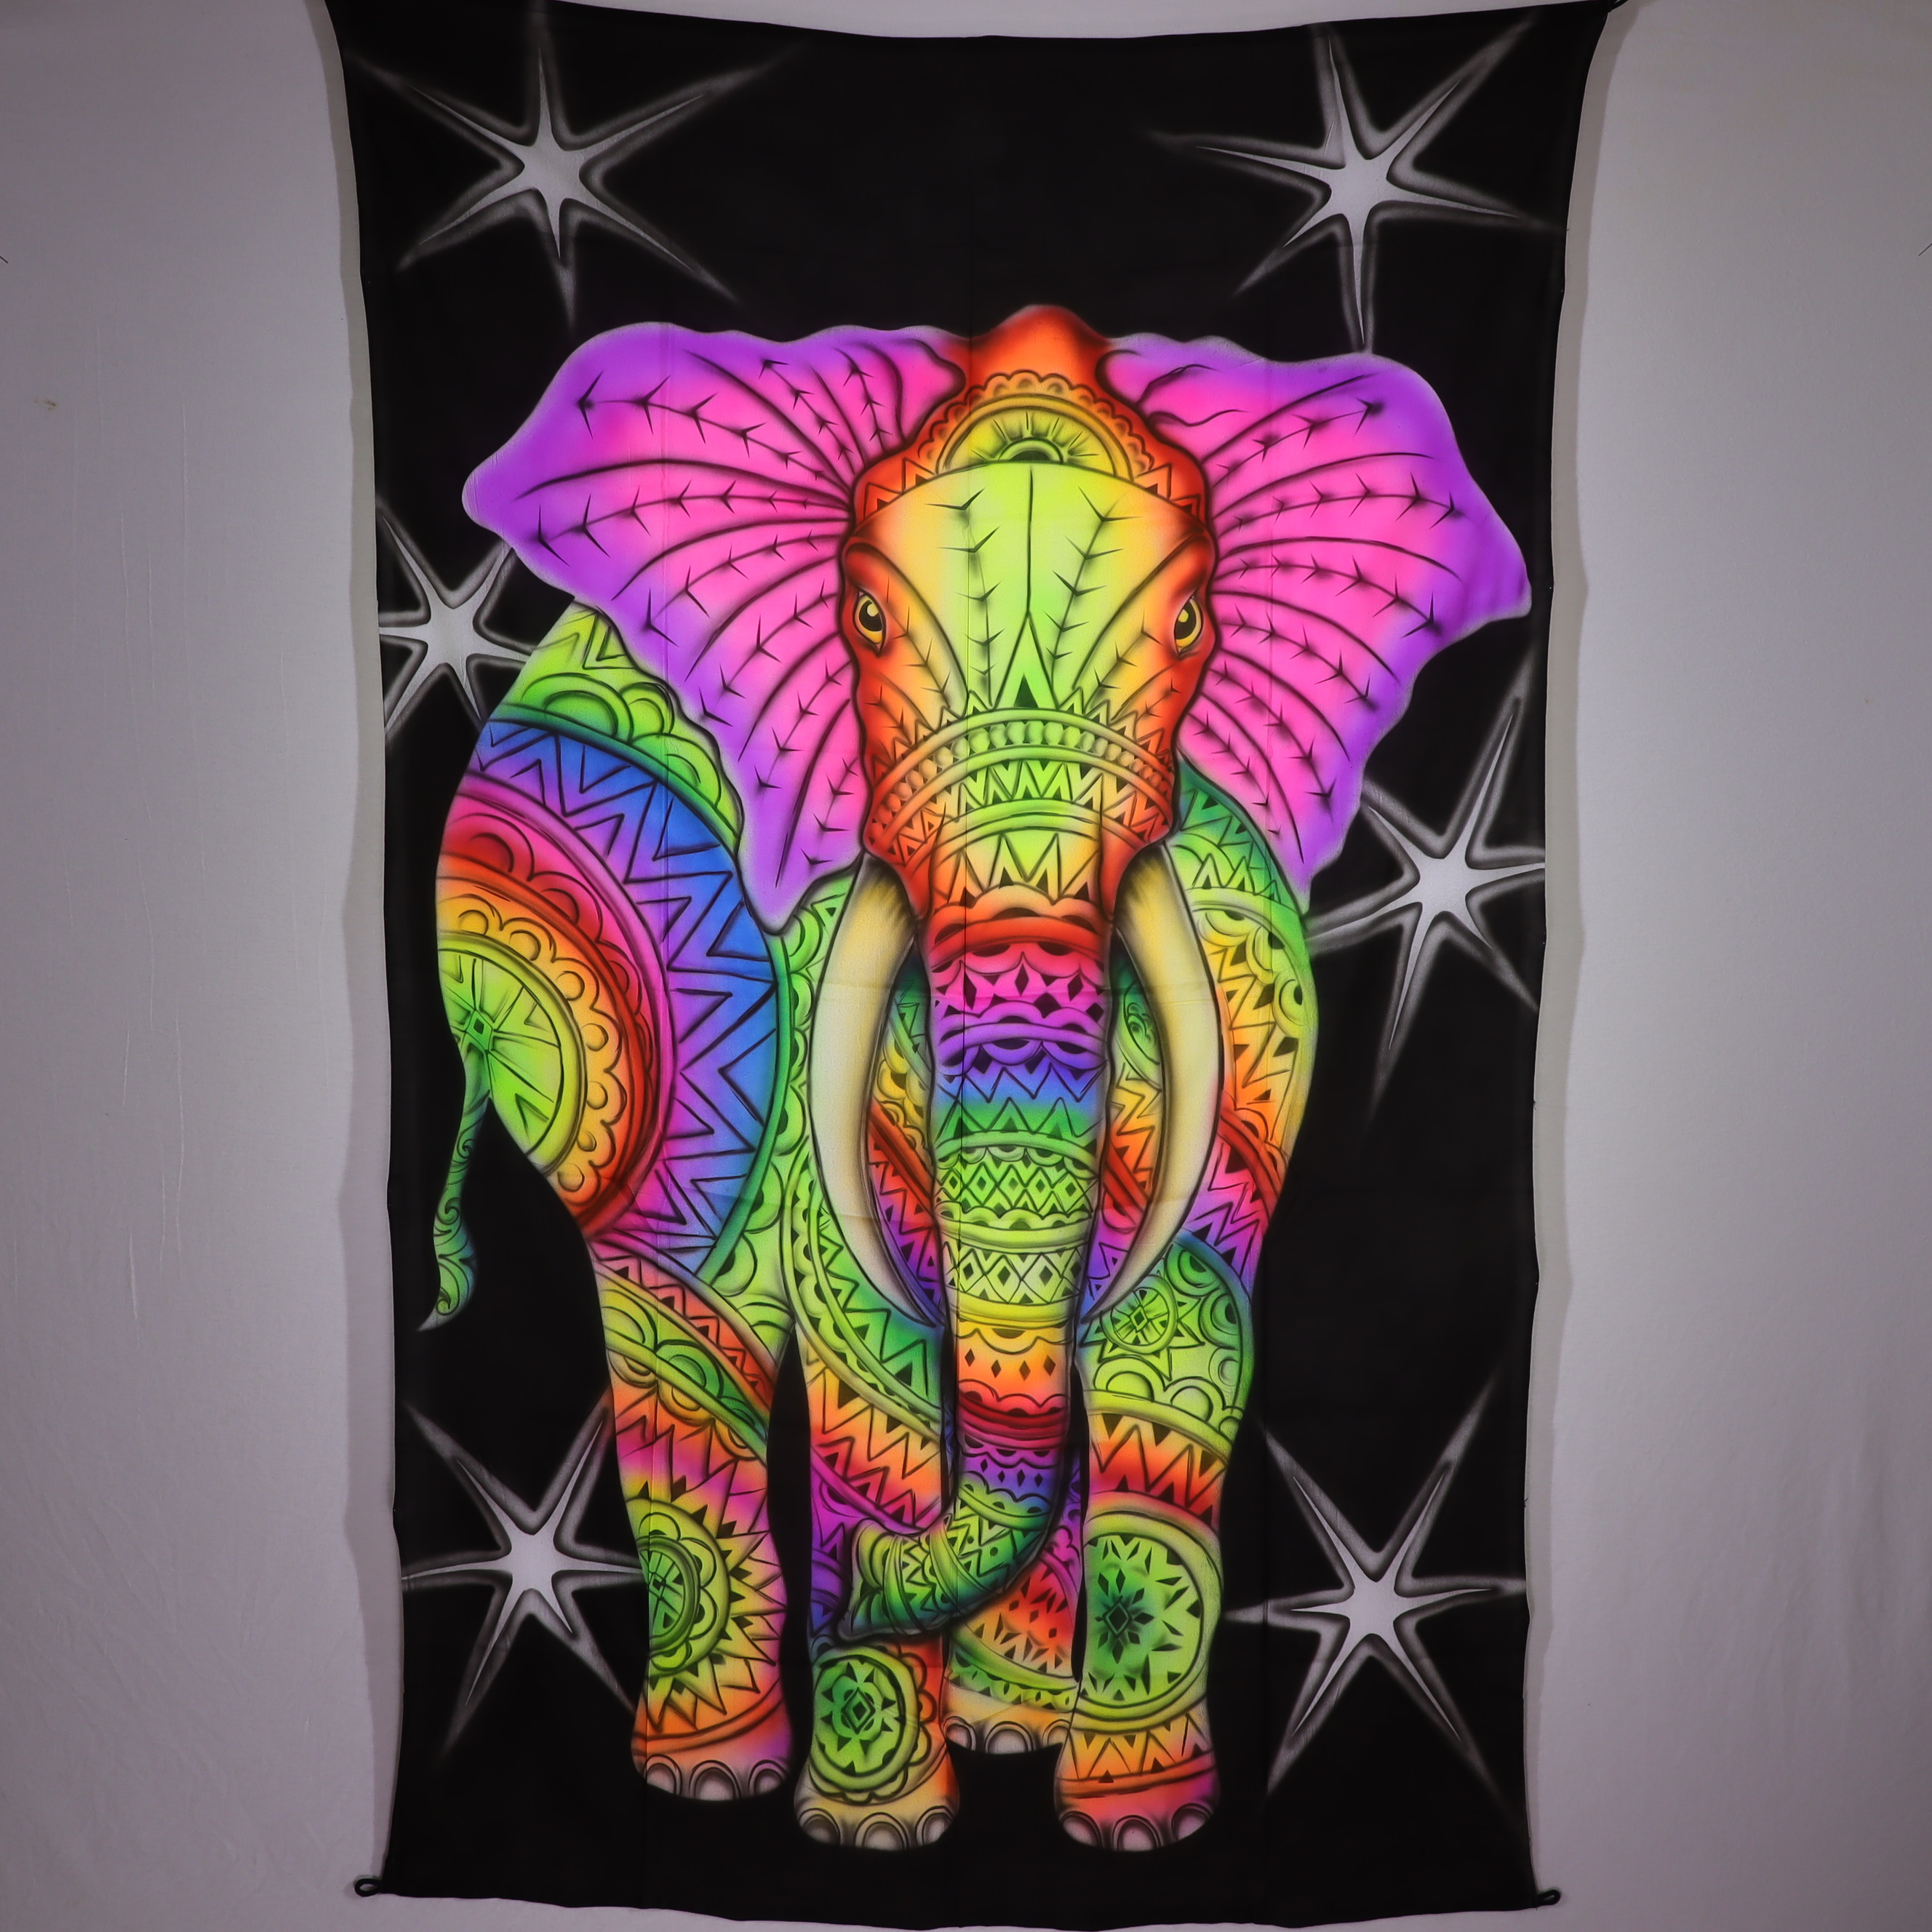 Wandtuch XXL - Elefantastisch - Bunter Fantasy Elefant - handgemalte und bunte Schwarzlicht UV aktiv Farben - 120 x 190